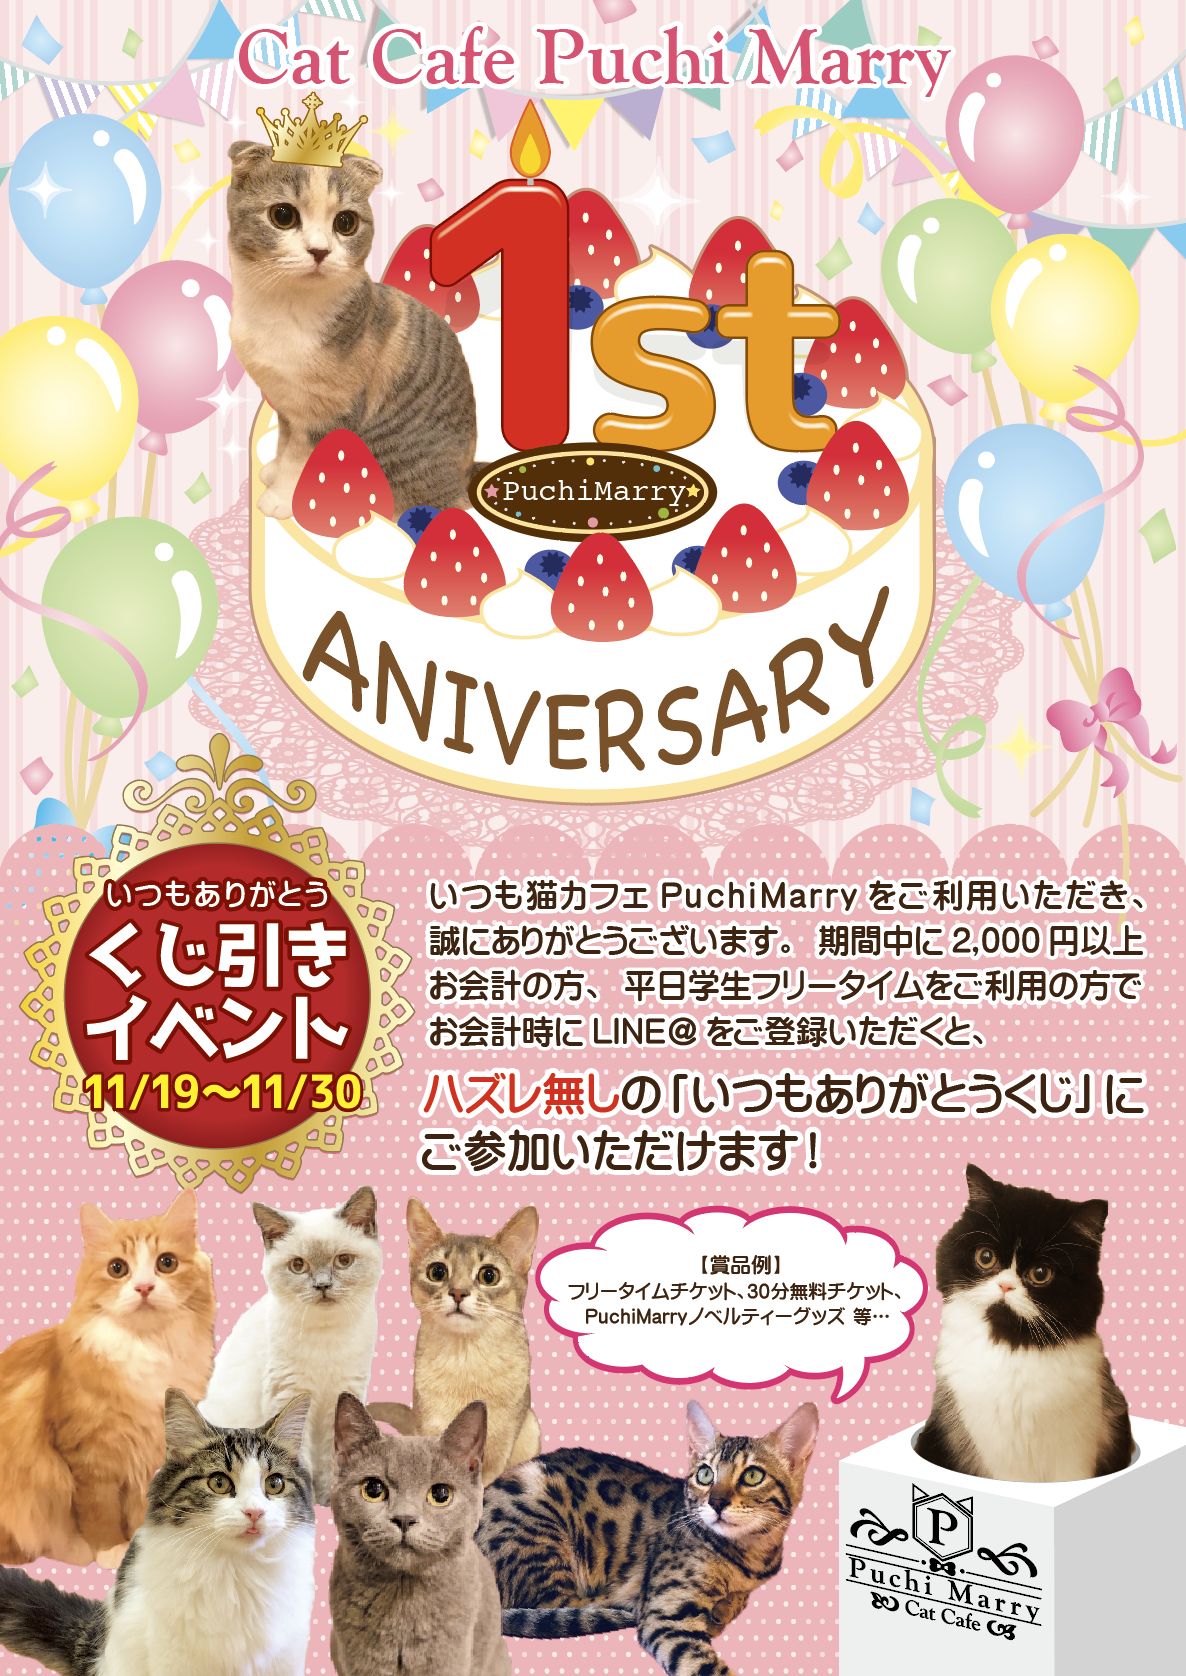 11 19 月 から 猫カフェpuchimarry1周年記念イベント開催決定 猫カフェ Puchi Marry ぷちまりー